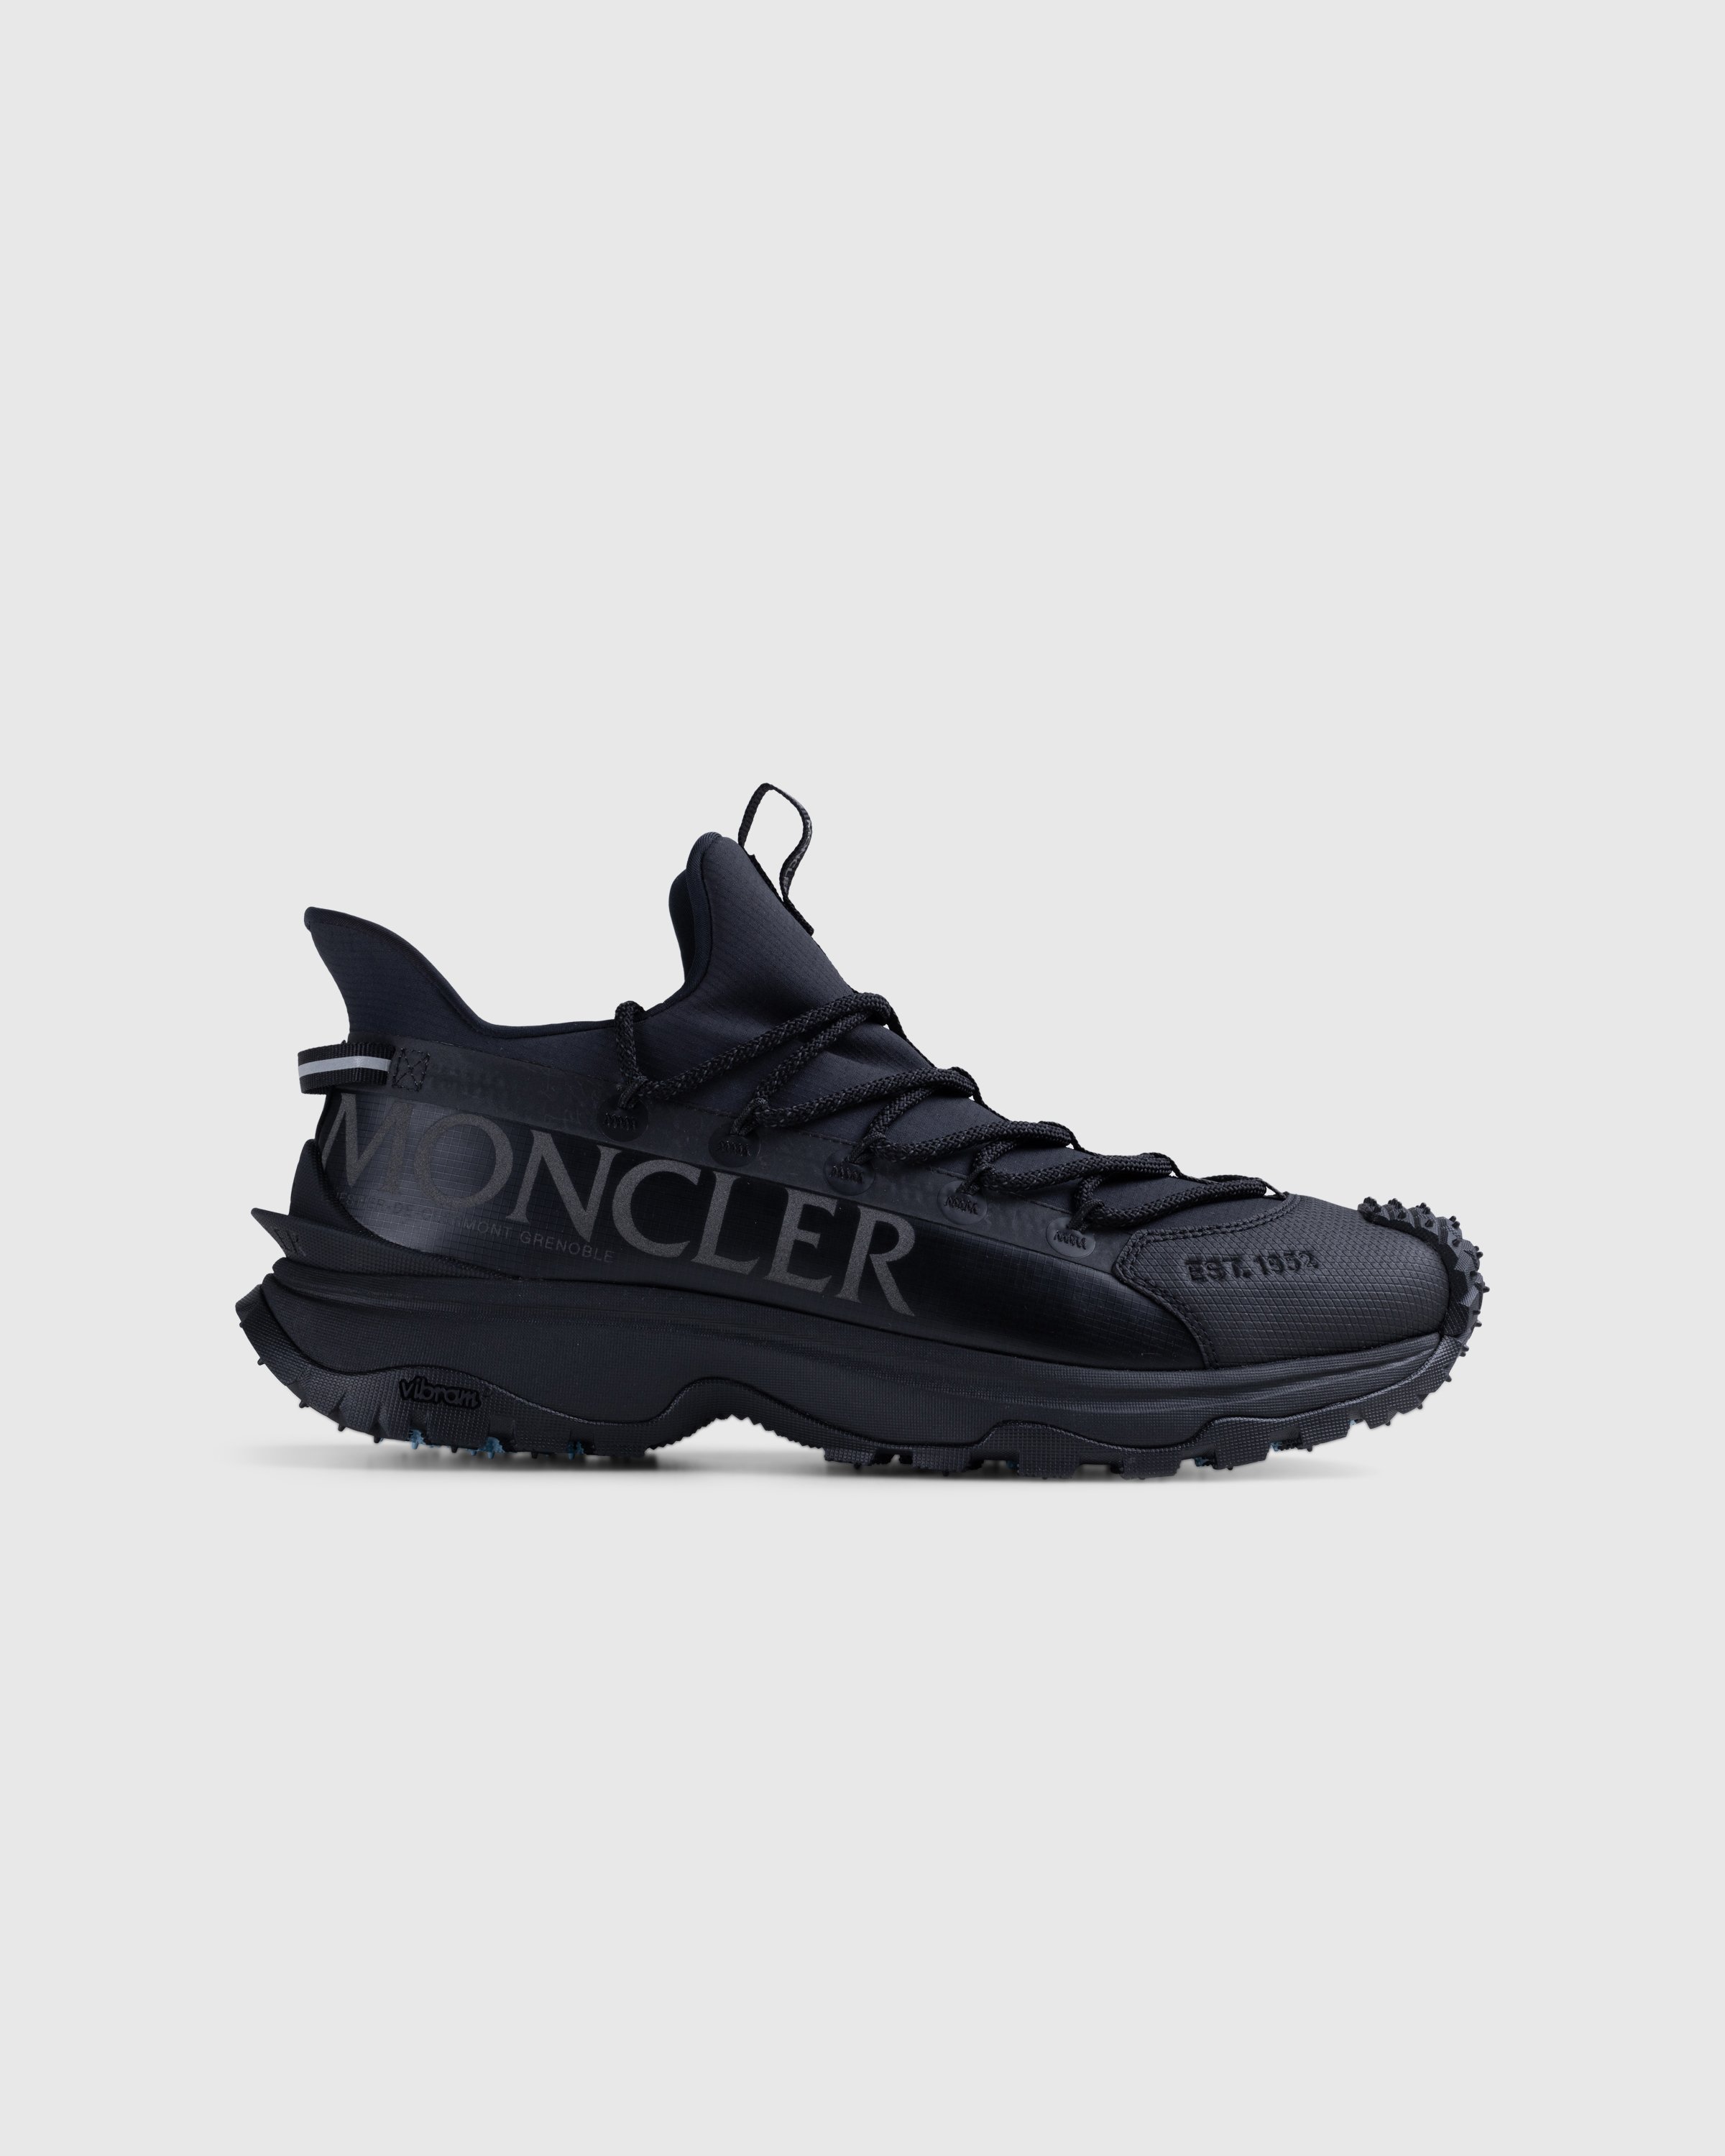 Moncler - Trailgrip Lite 2 Sneakers Black - Footwear - Black - Image 1